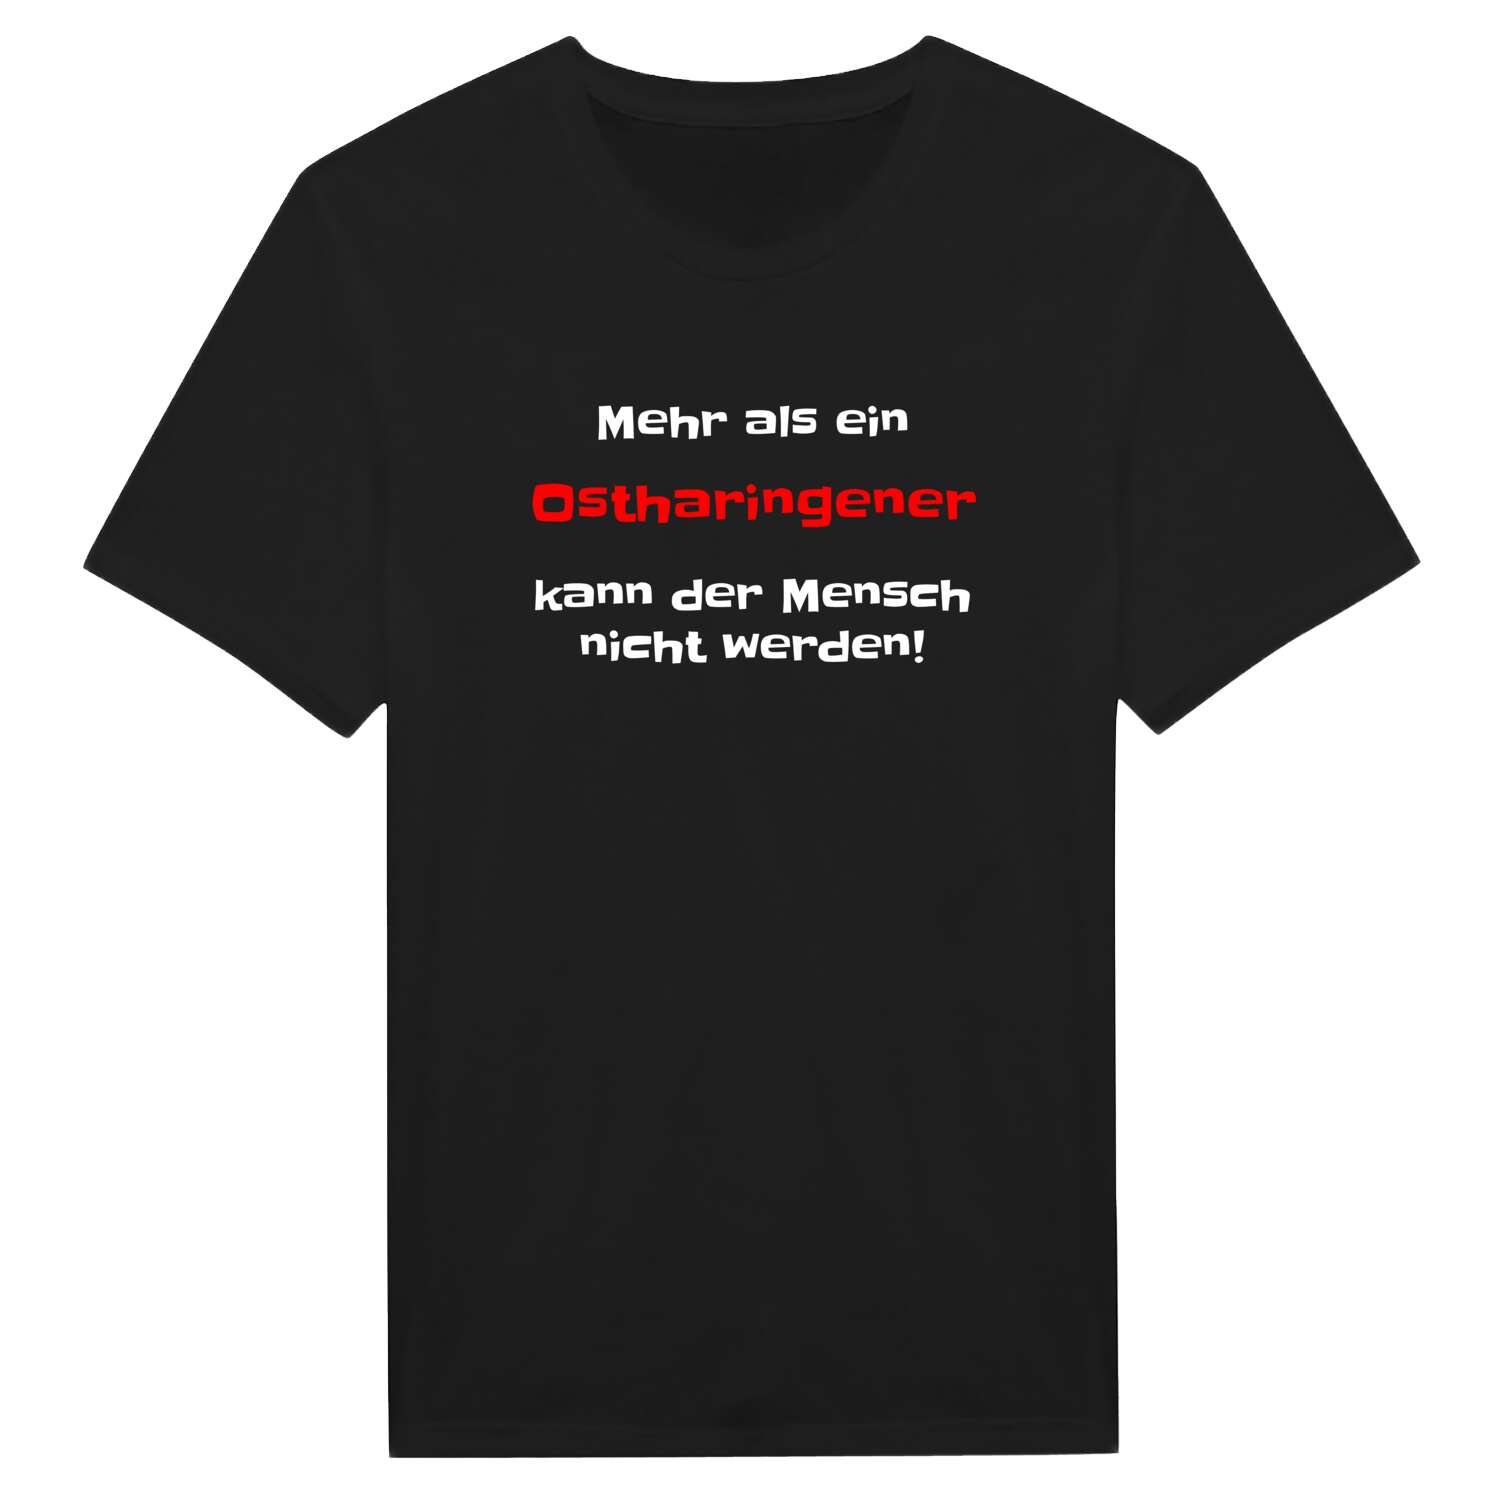 Ostharingen T-Shirt »Mehr als ein«